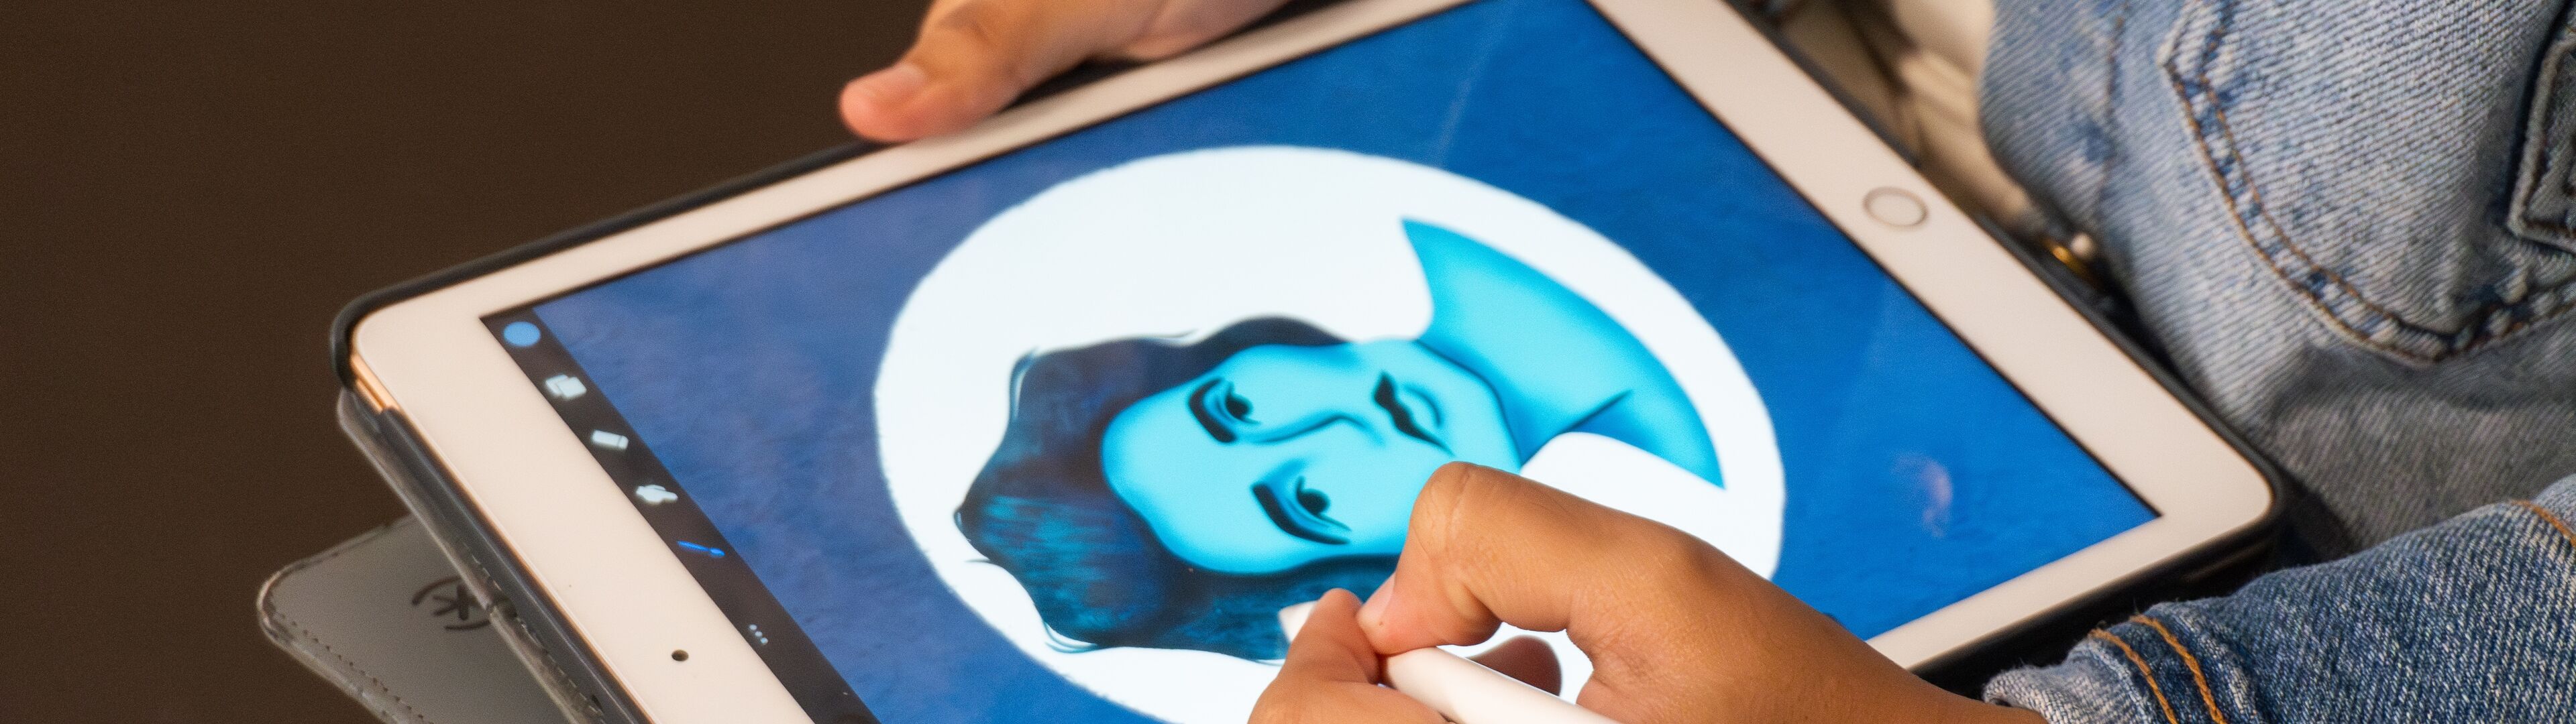 Mano de artista usando un lápiz óptico para dibujar un retrato en tonos azules en una tableta digital.